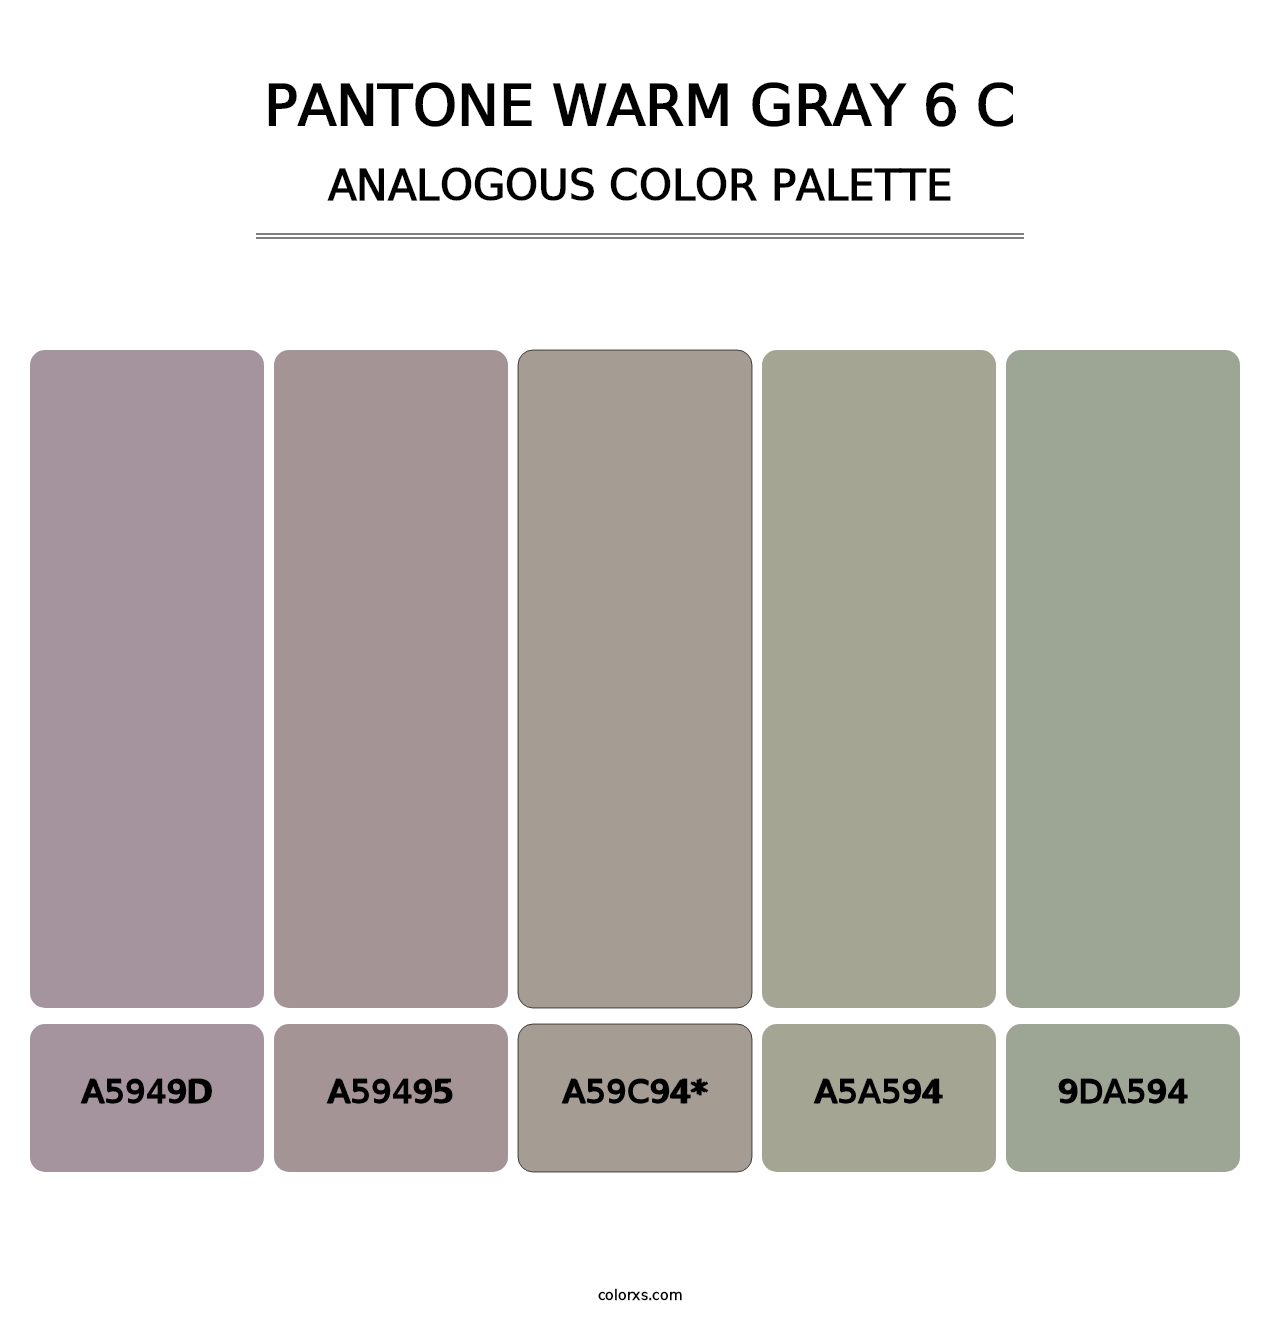 PANTONE Warm Gray 6 C - Analogous Color Palette